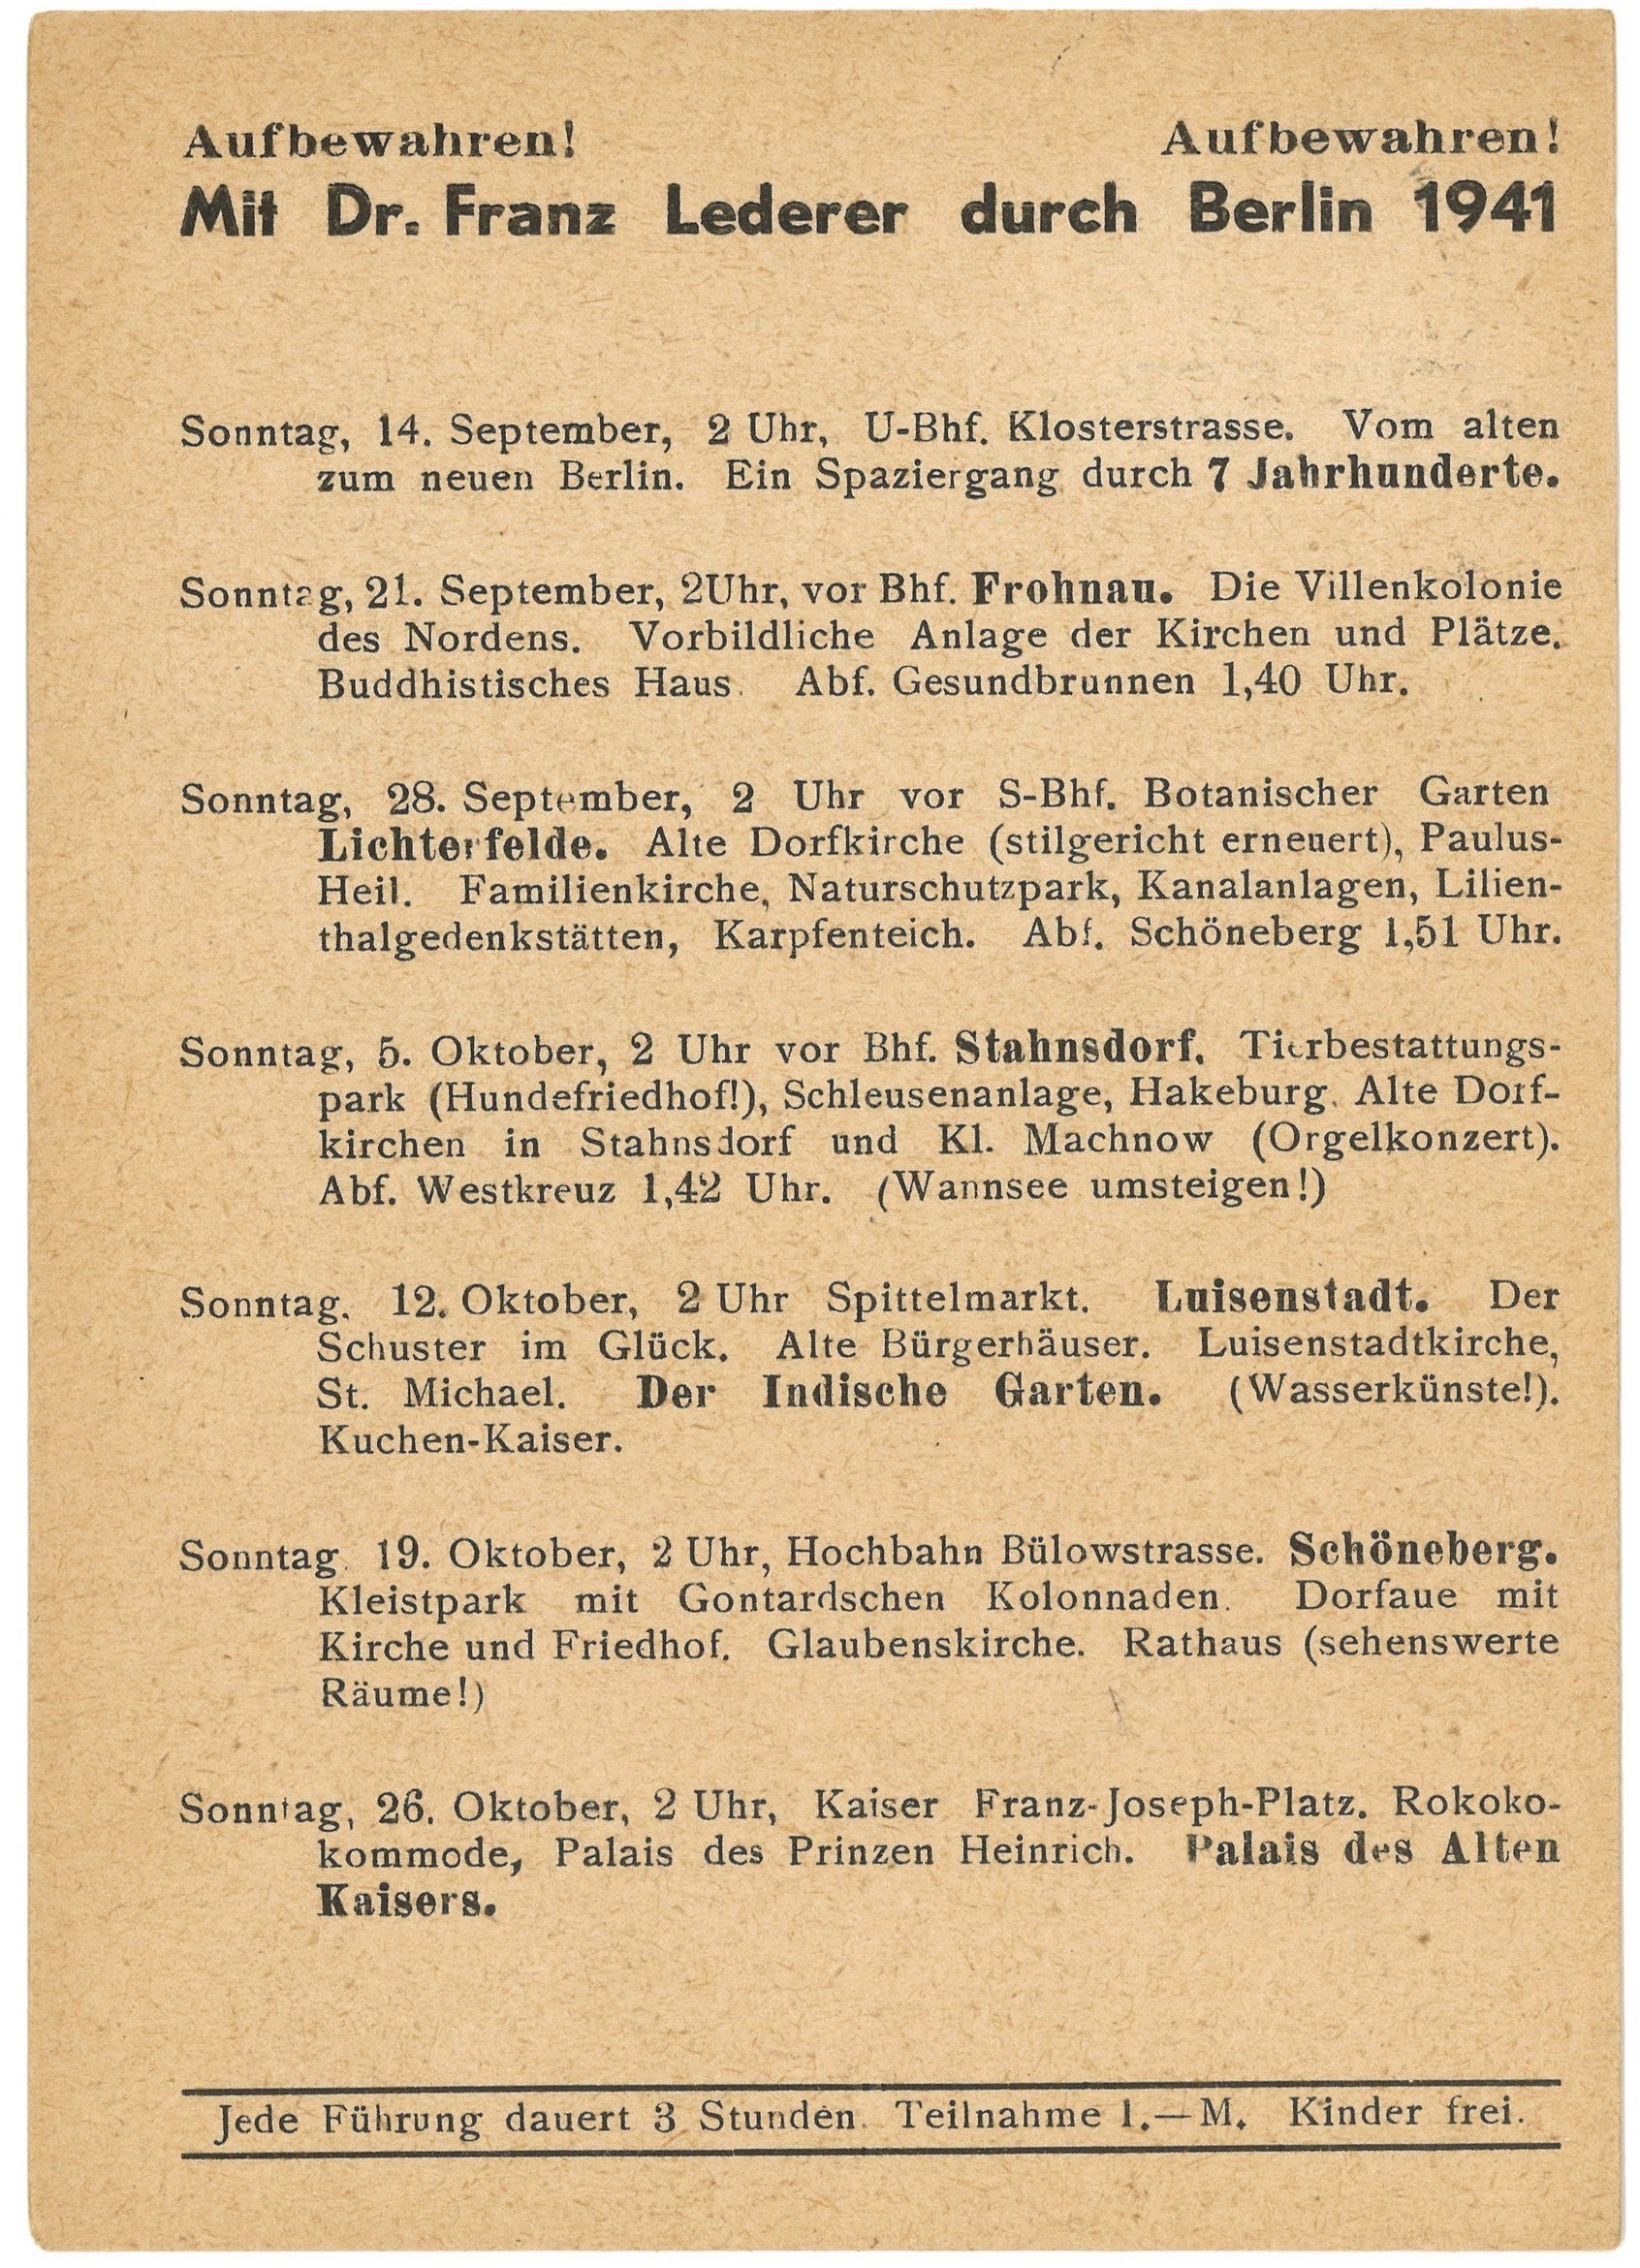 Programm der Berlin-Führungen von Dr. Franz Lederer für September bis Oktober 1941 (Landesgeschichtliche Vereinigung für die Mark Brandenburg e.V., Archiv CC BY)